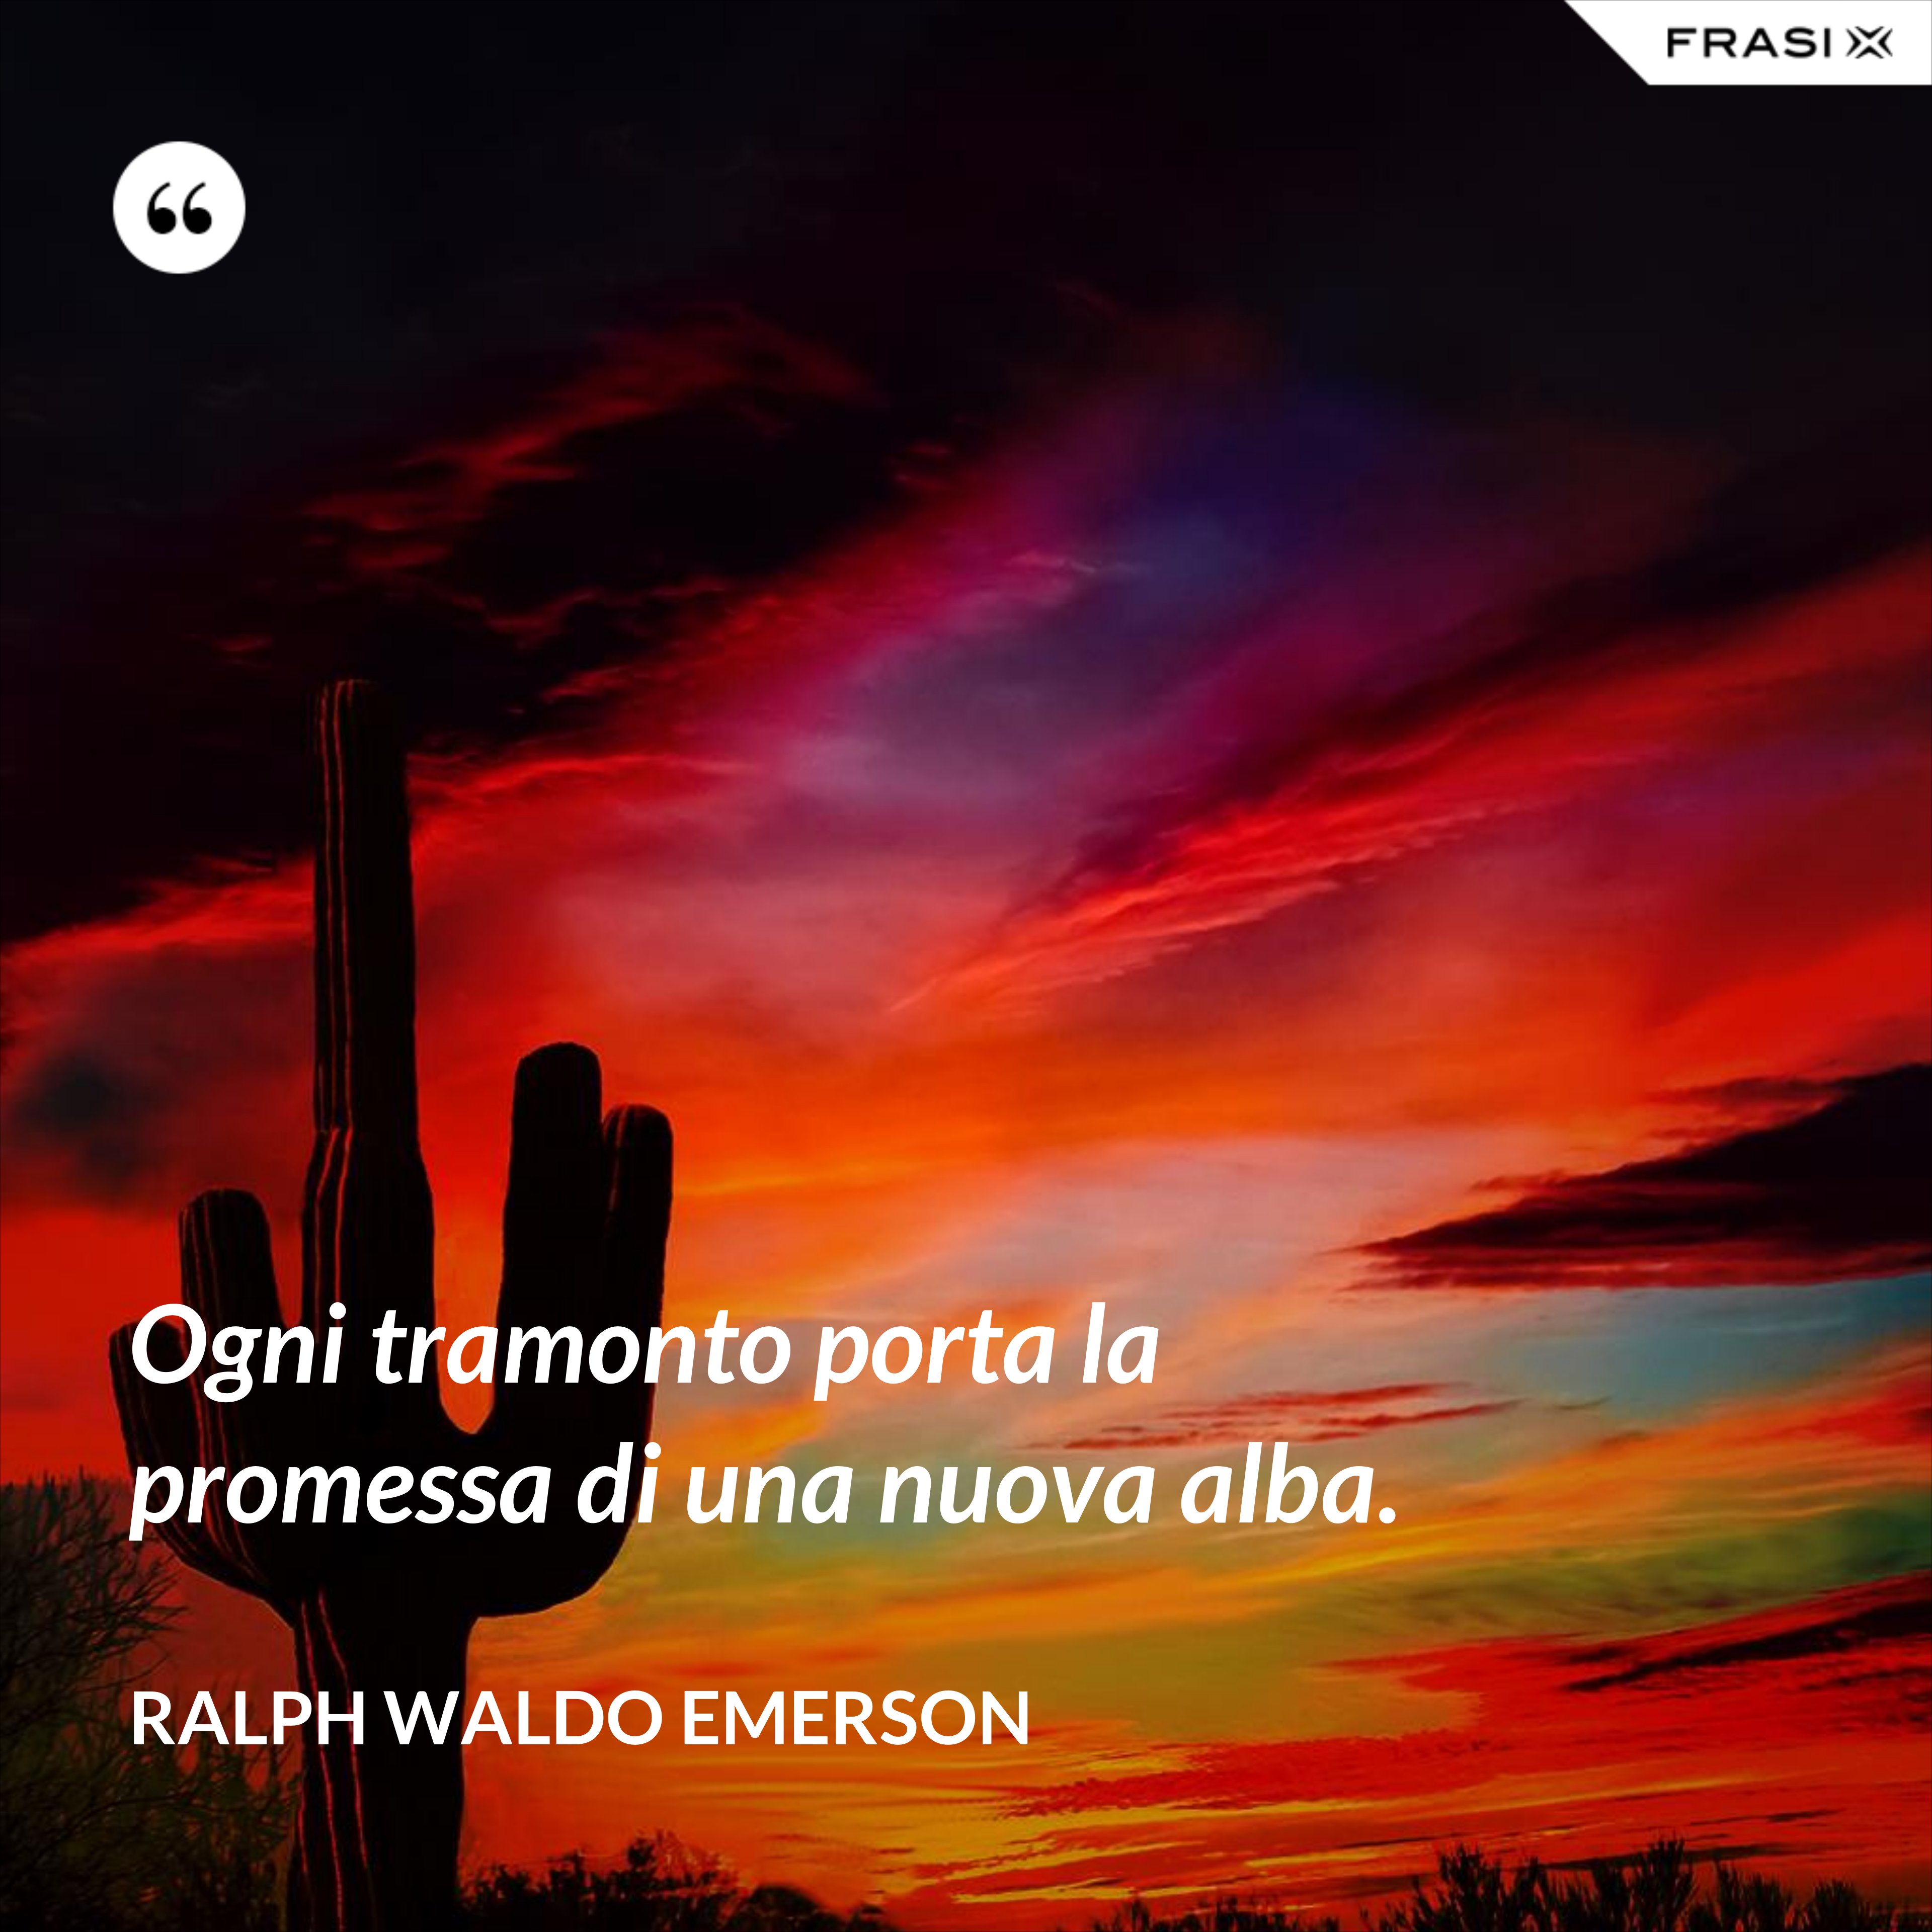 Ogni tramonto porta la promessa di una nuova alba. - Ralph Waldo Emerson